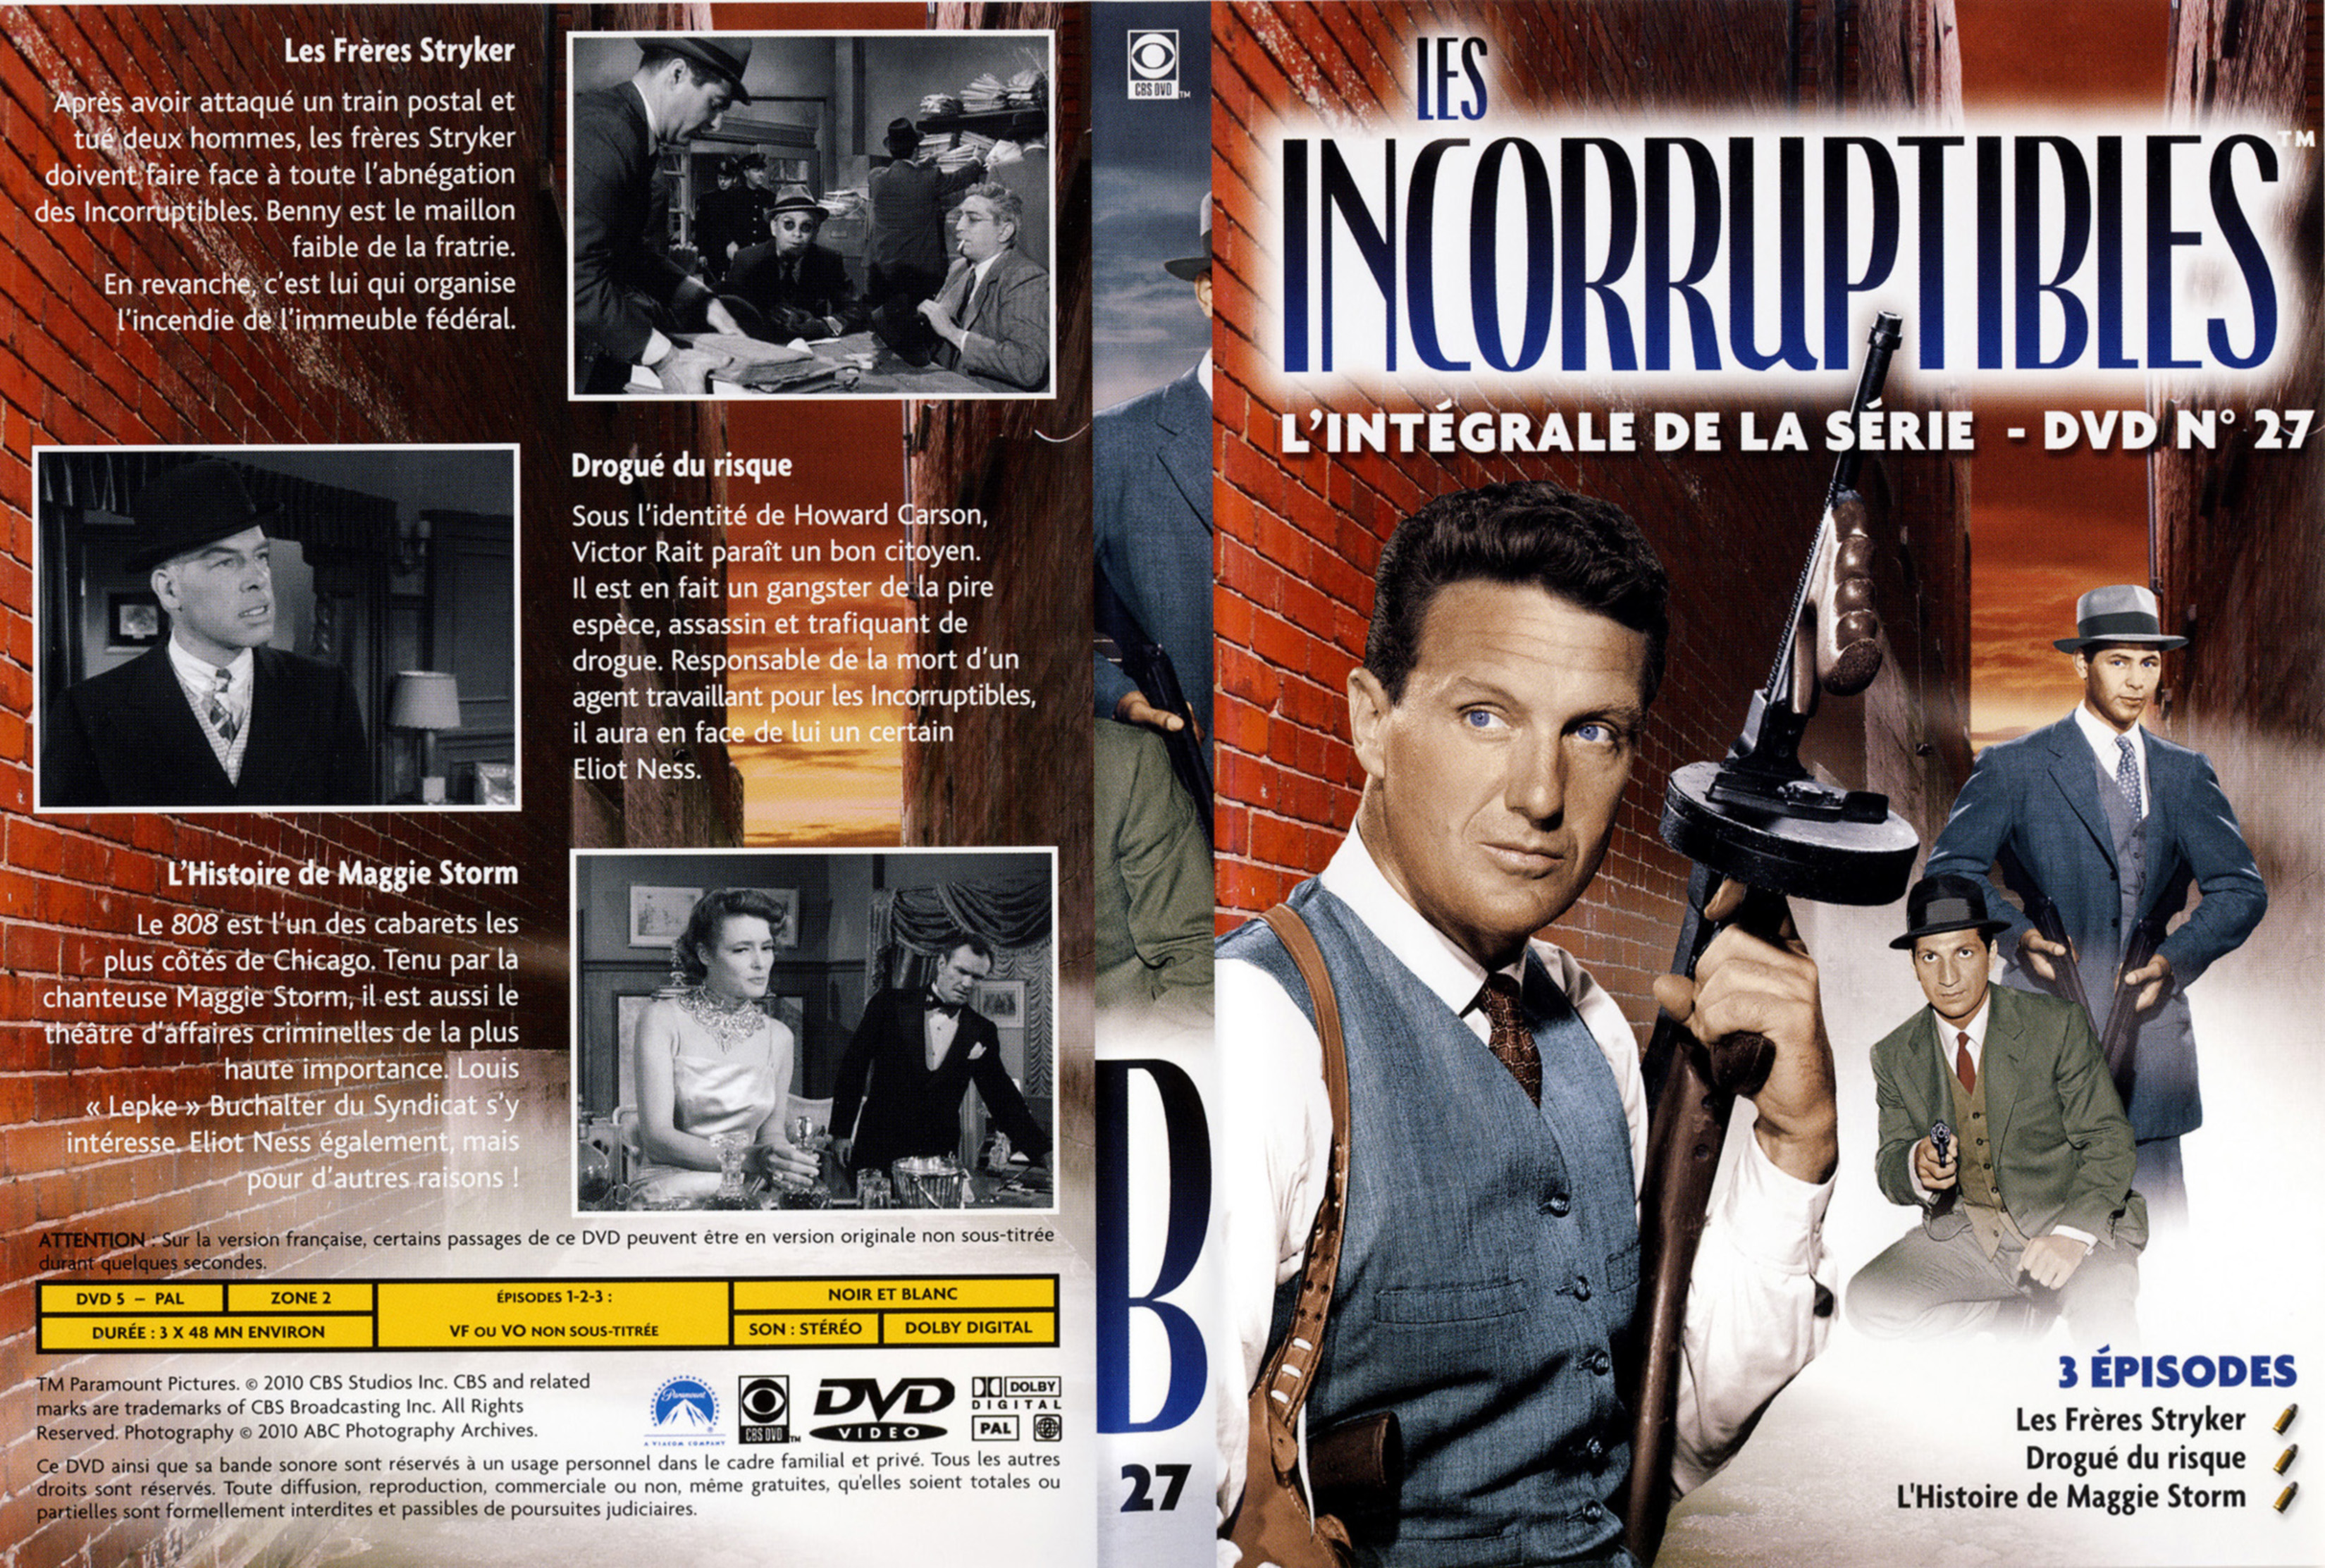 Jaquette DVD Les incorruptibles intgrale DVD 27